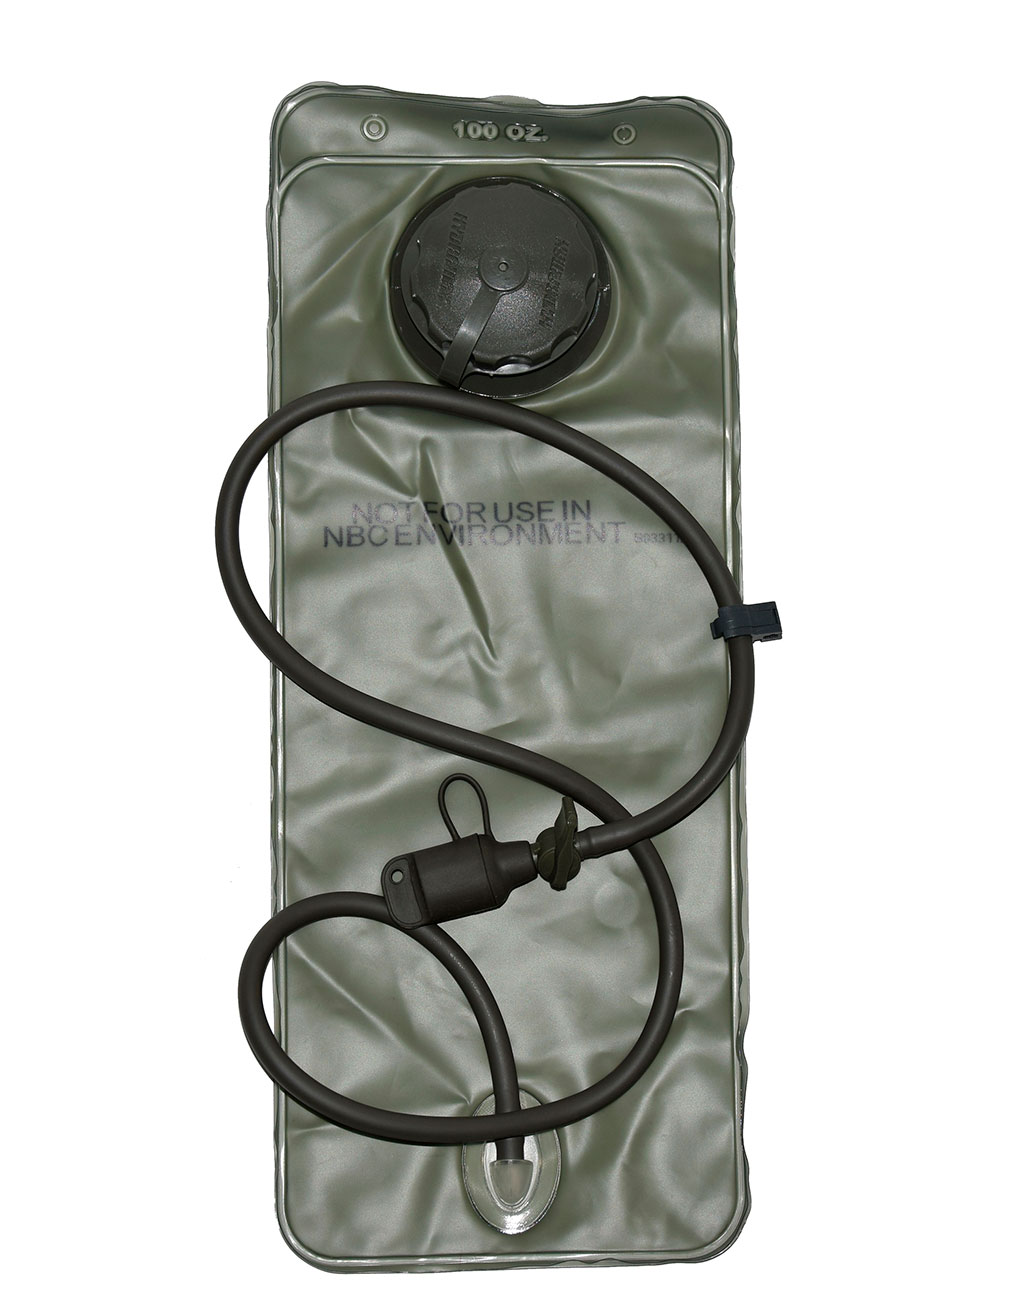 Рюкзак BLACKHAWK с гидратором 50L olive б/у США